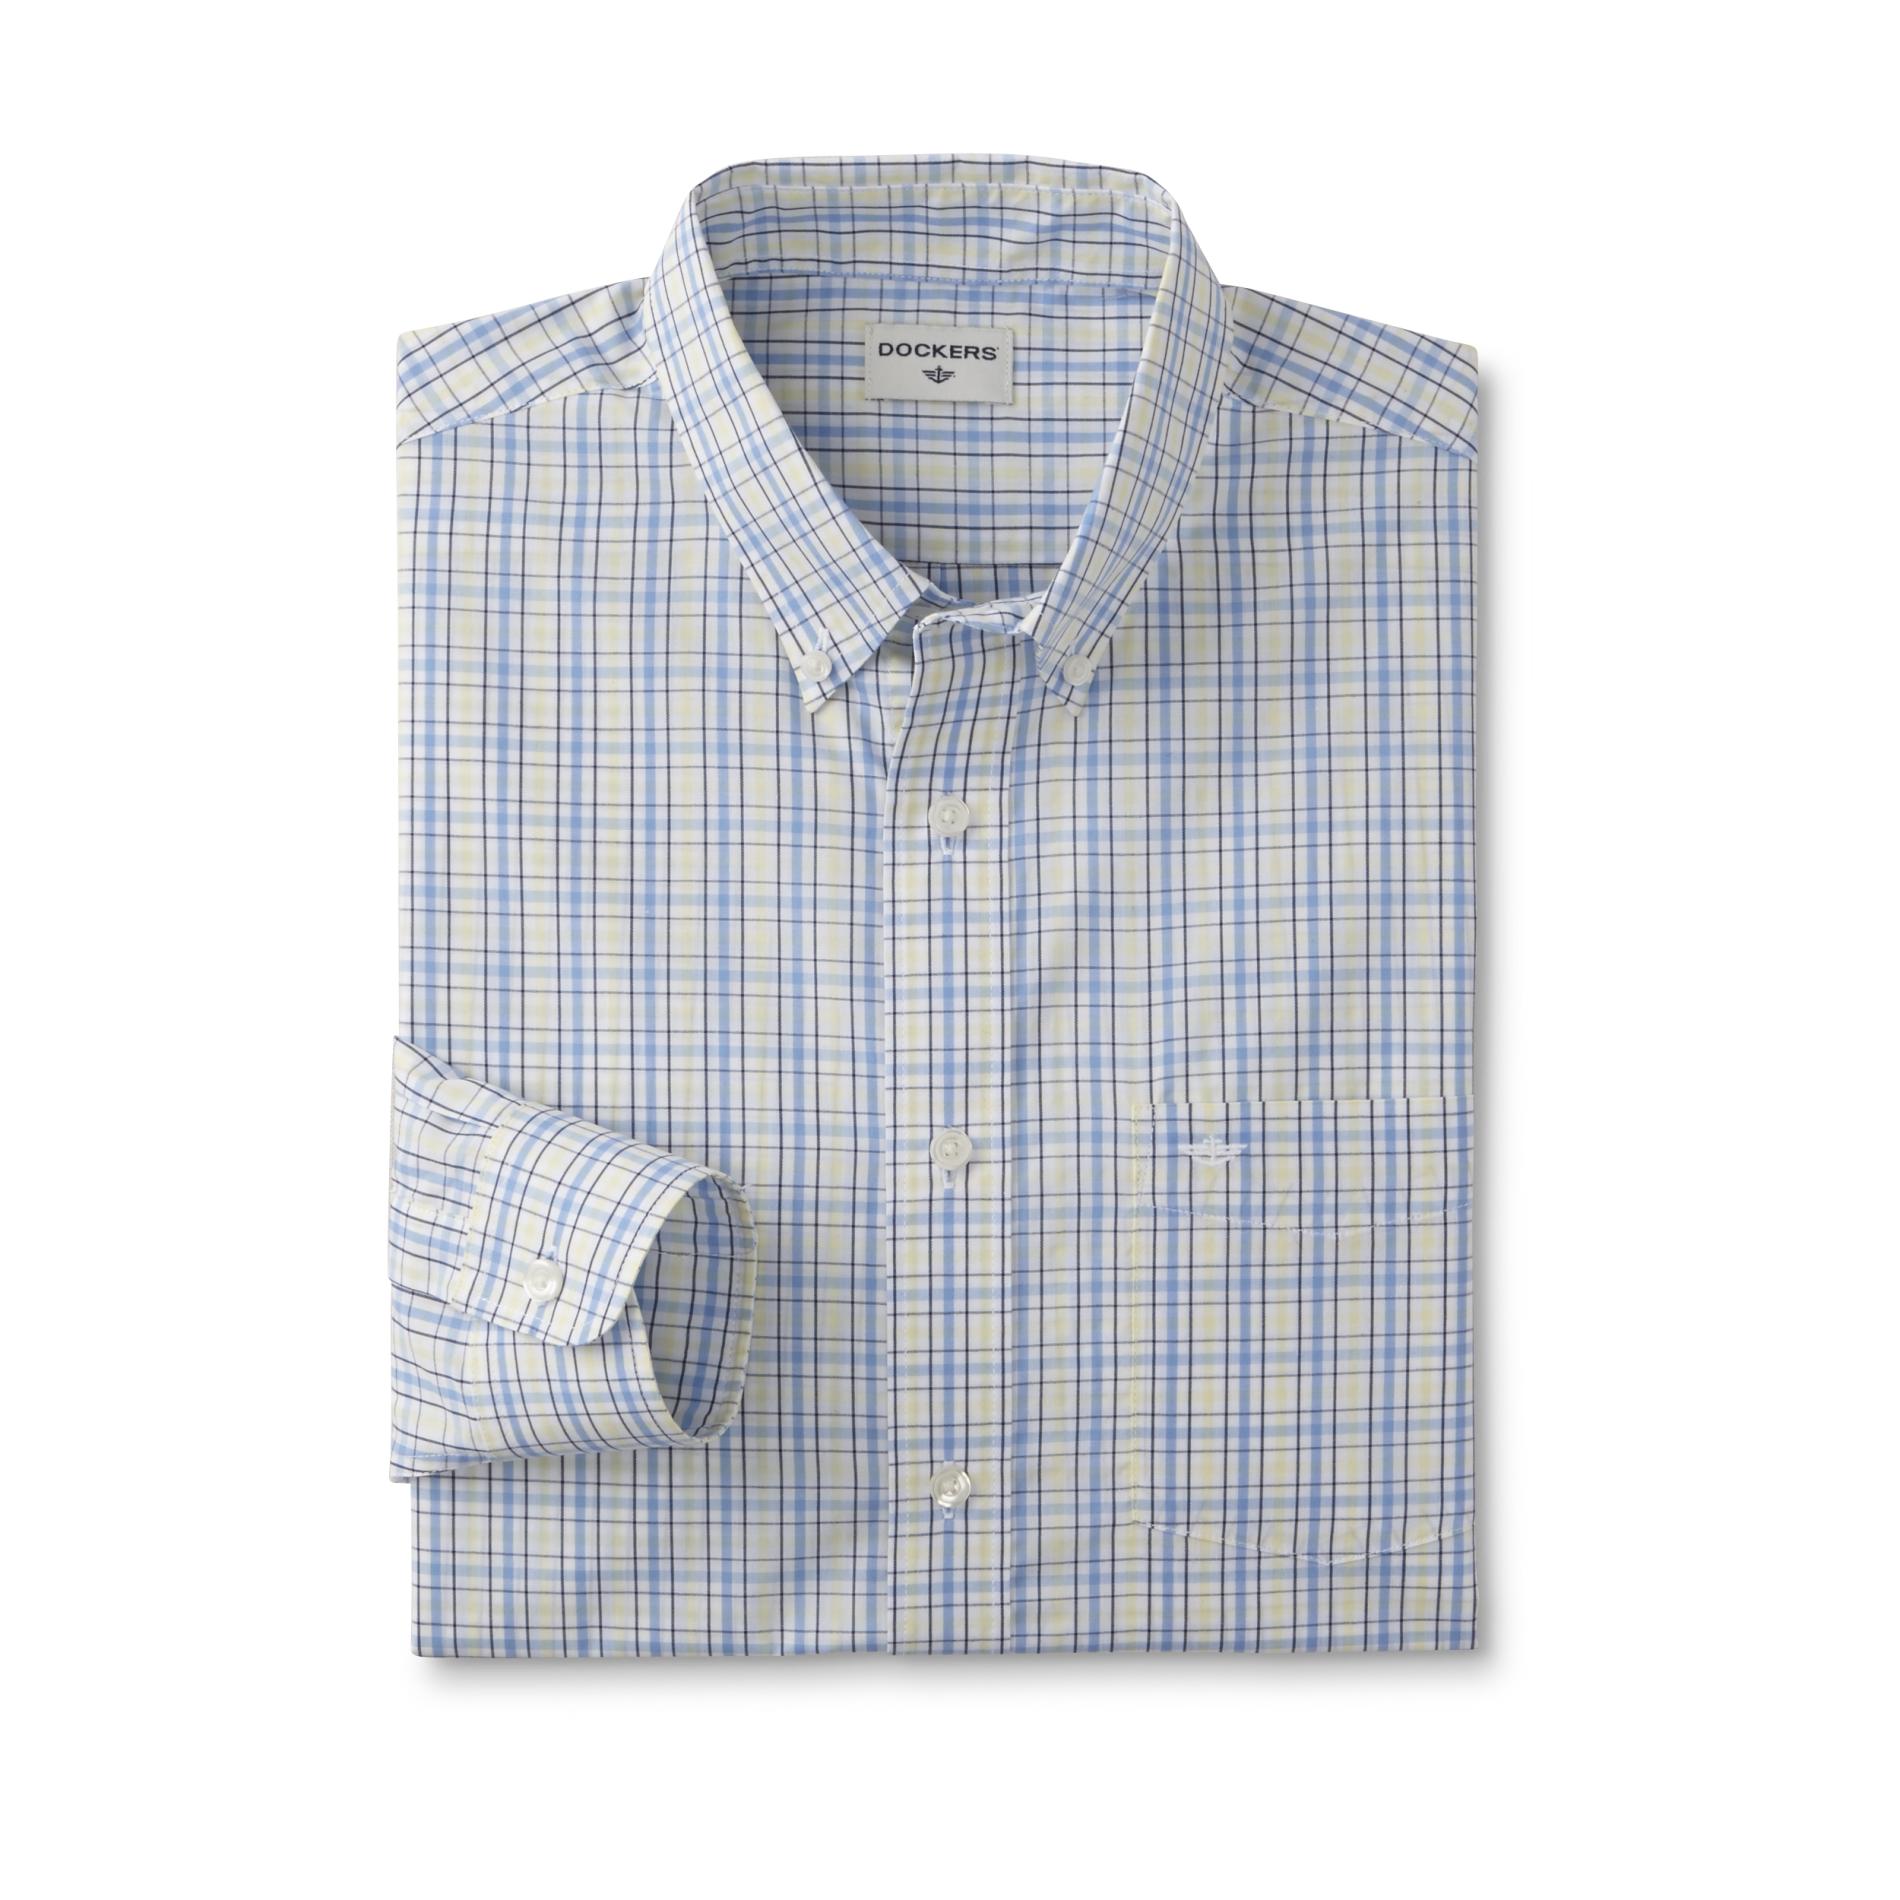 Dockers Men's Button-Front Shirt - Plaid